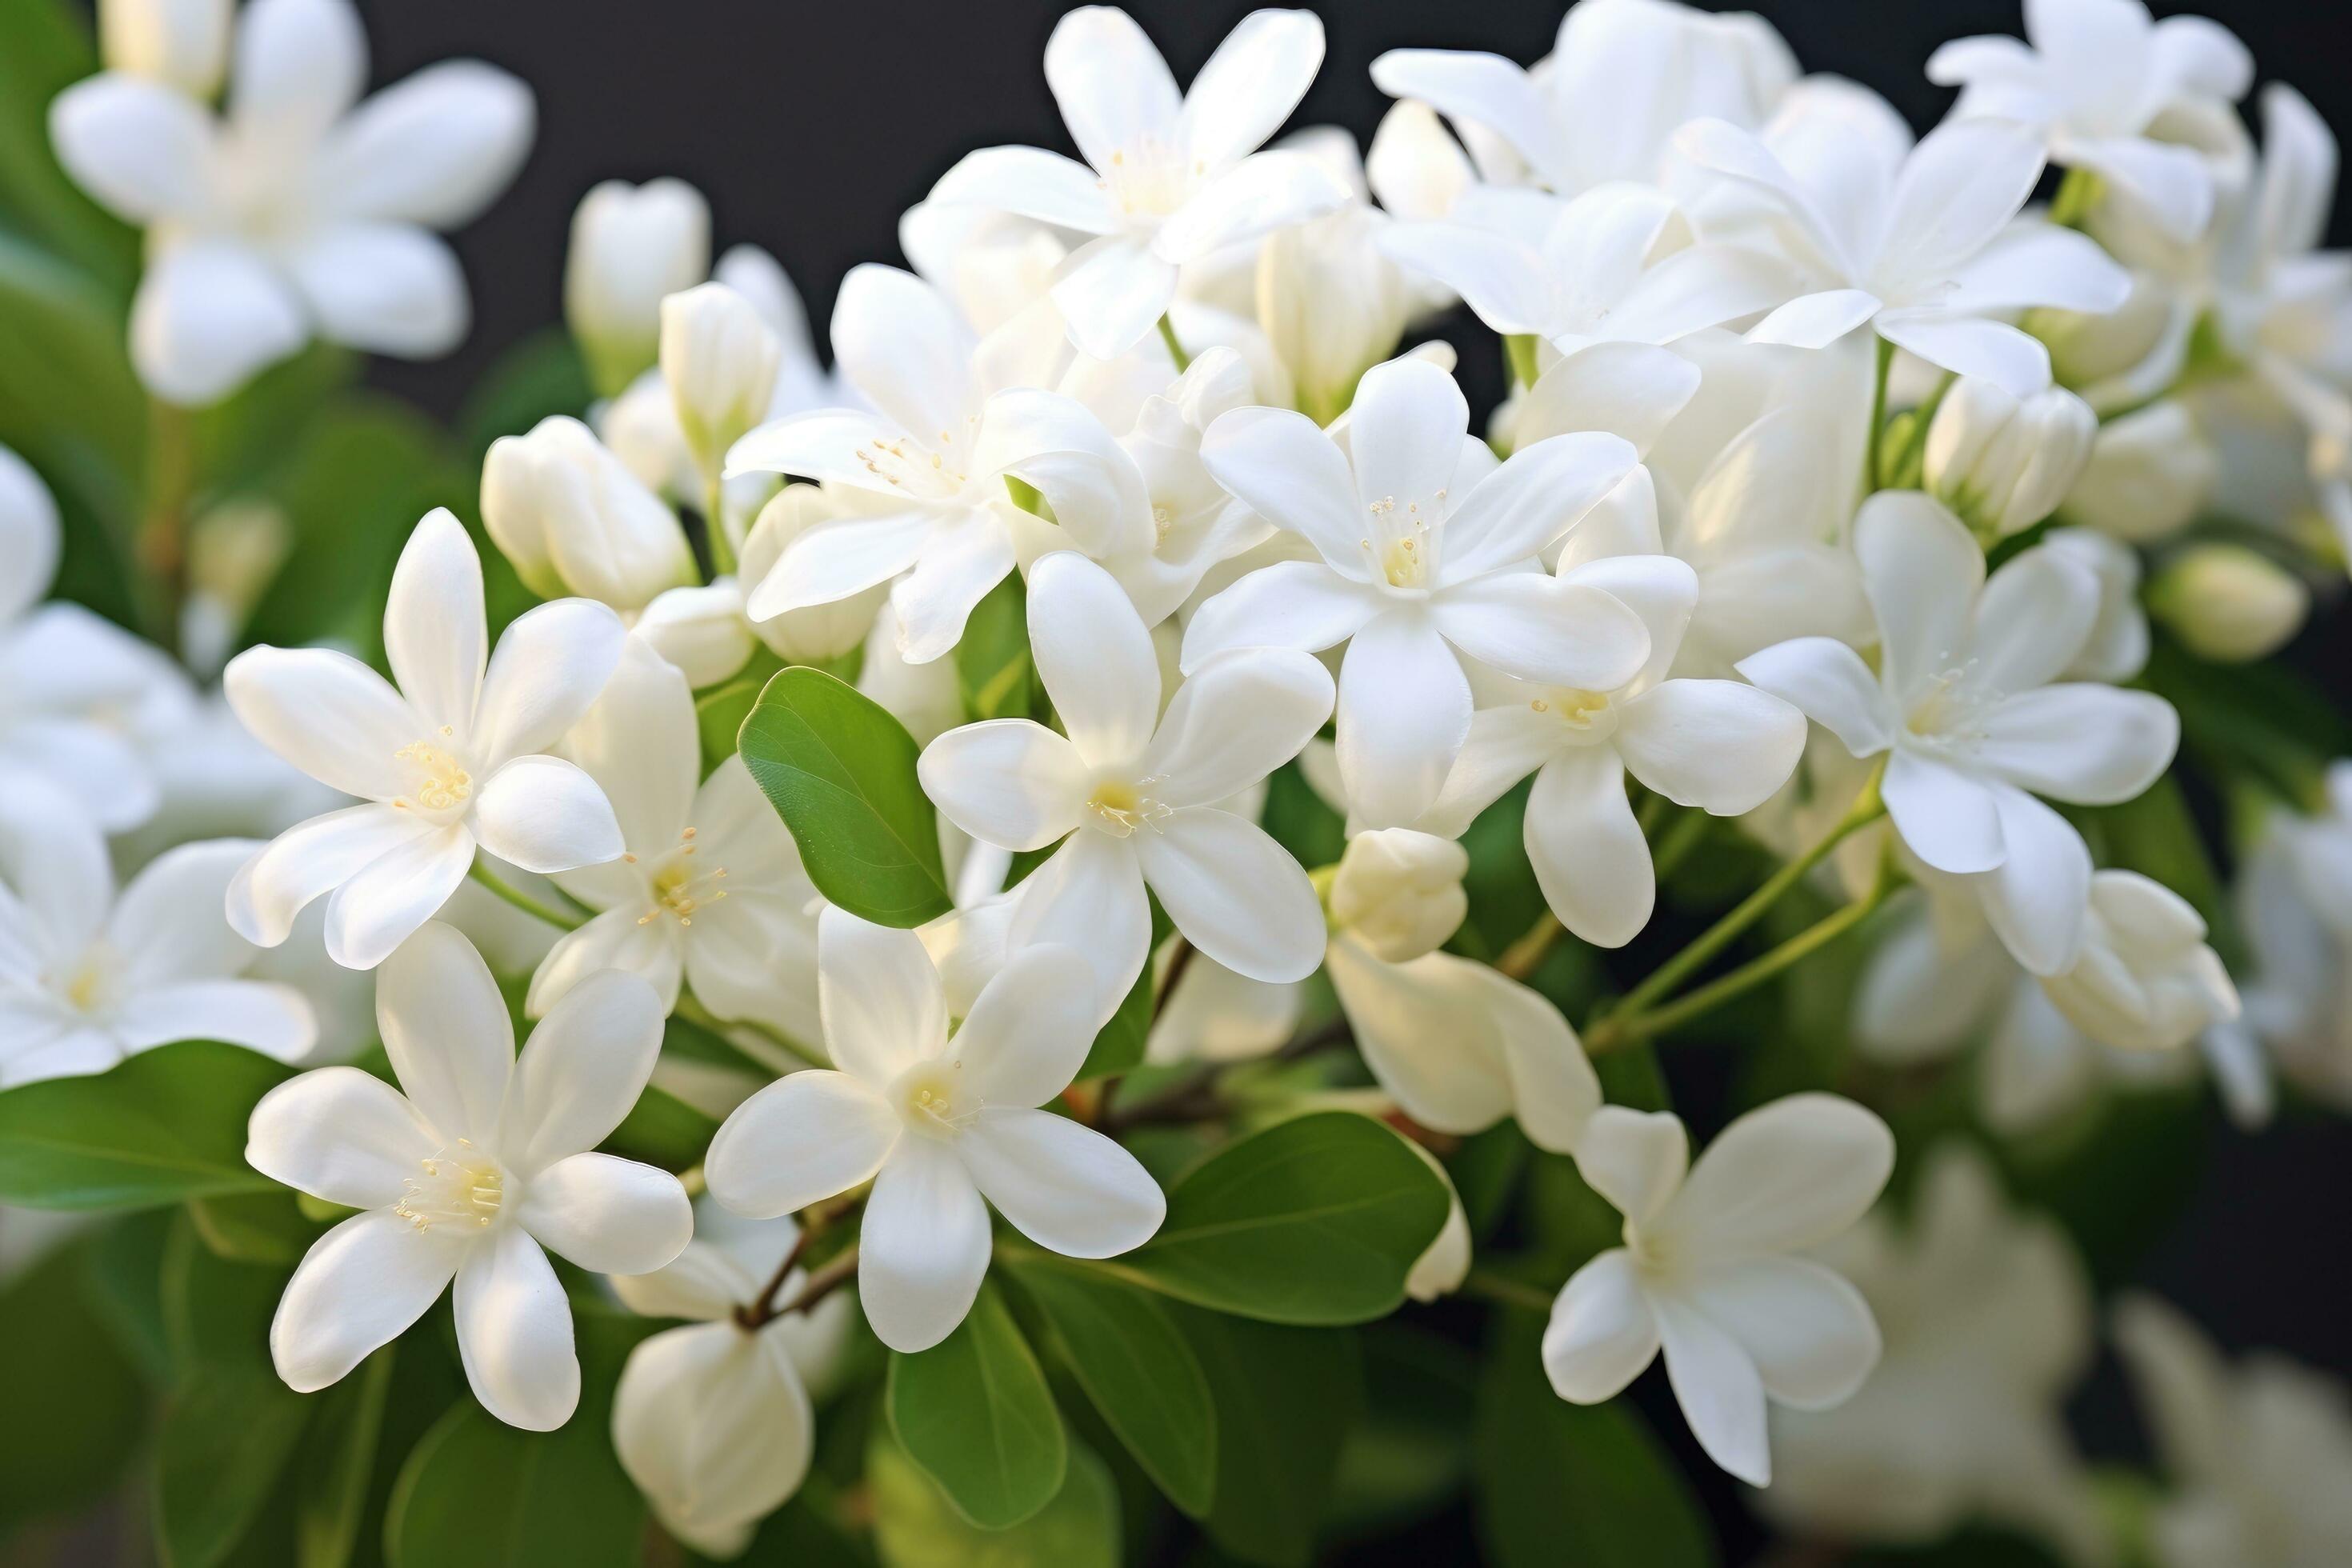 White jasmine flower blooming in the garden, Thailand. beautiful